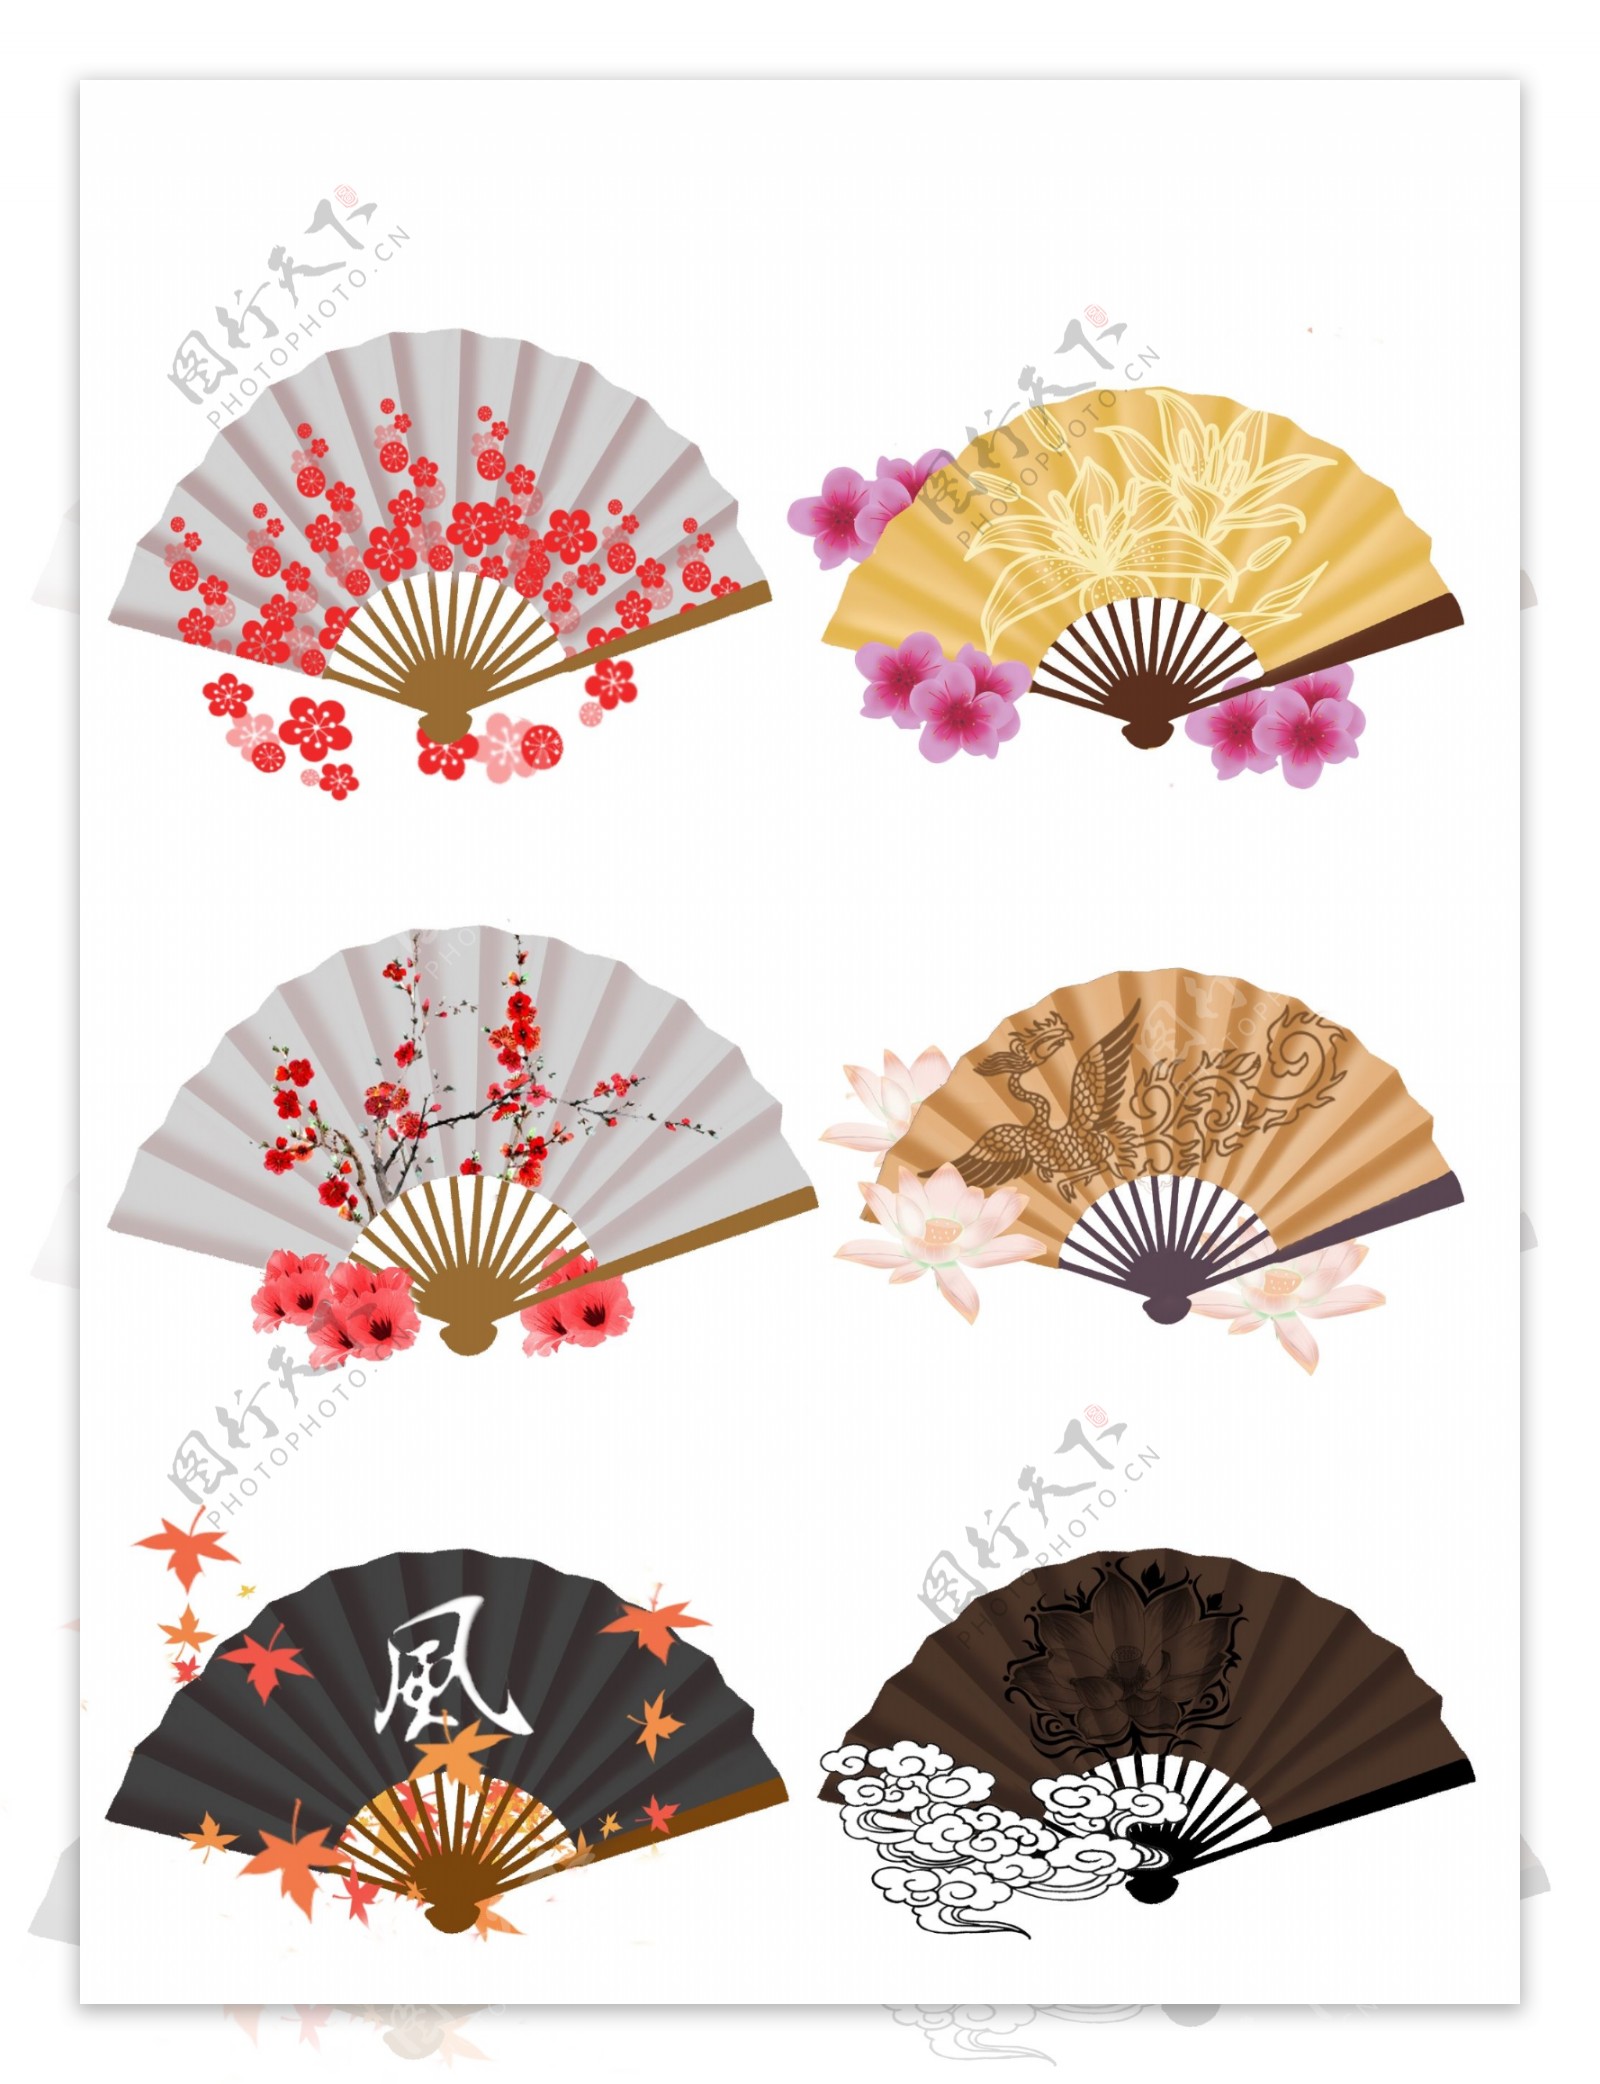 手绘中国风折扇套图可商用元素